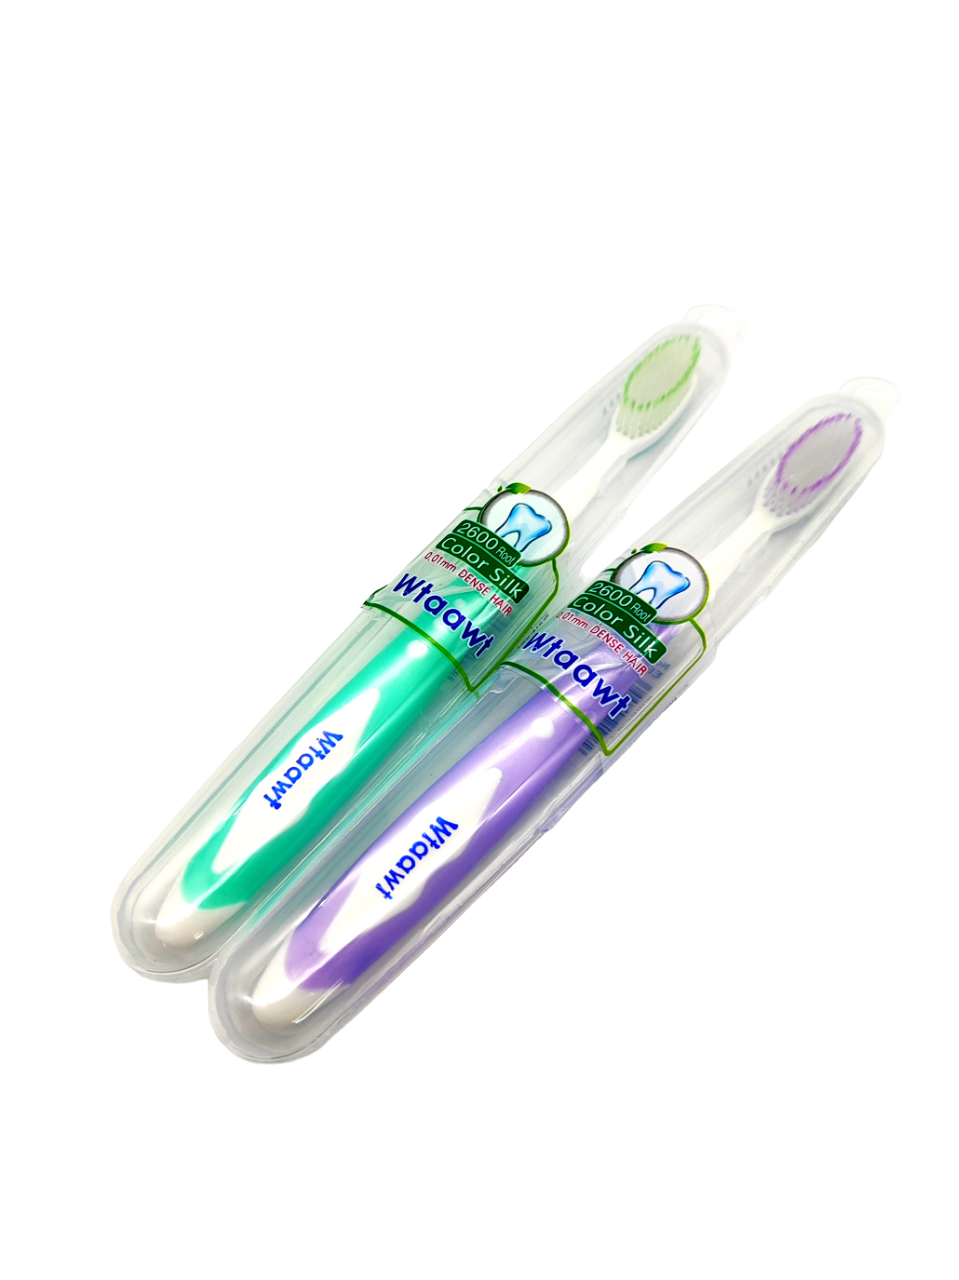 Комплект зубных щеток Wtaawt в футляре Цвет зеленый-фиолетовый 2 шт. комплект зубных щеток eomay зеленый фиолетовый 2 шт